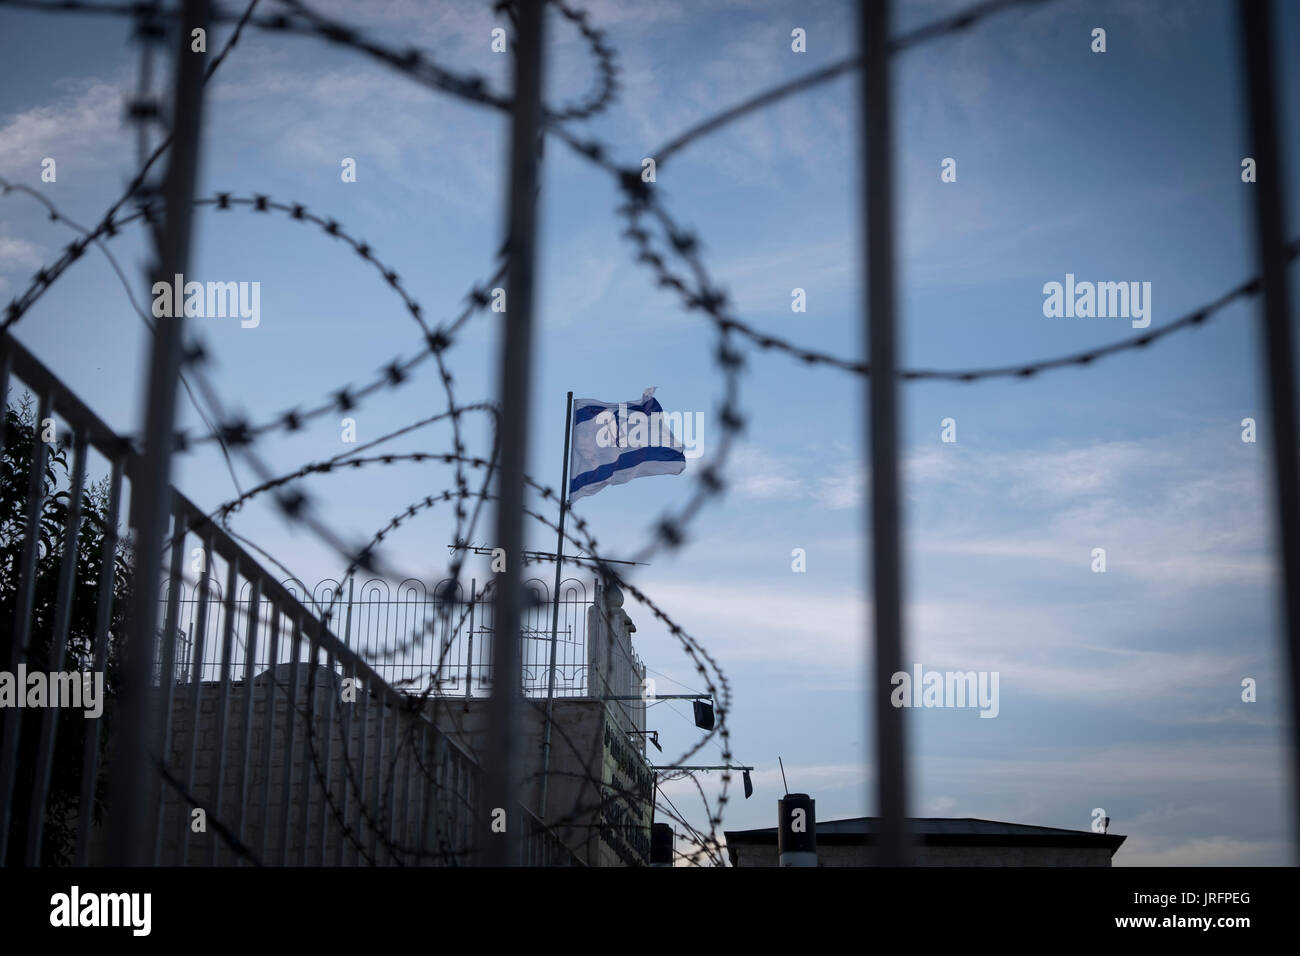 La bandiera Israeliana sorvola barricate di reticolati di filo spinato, un fin troppo comune in vista della/Palestinese conflitto israeliano Foto Stock